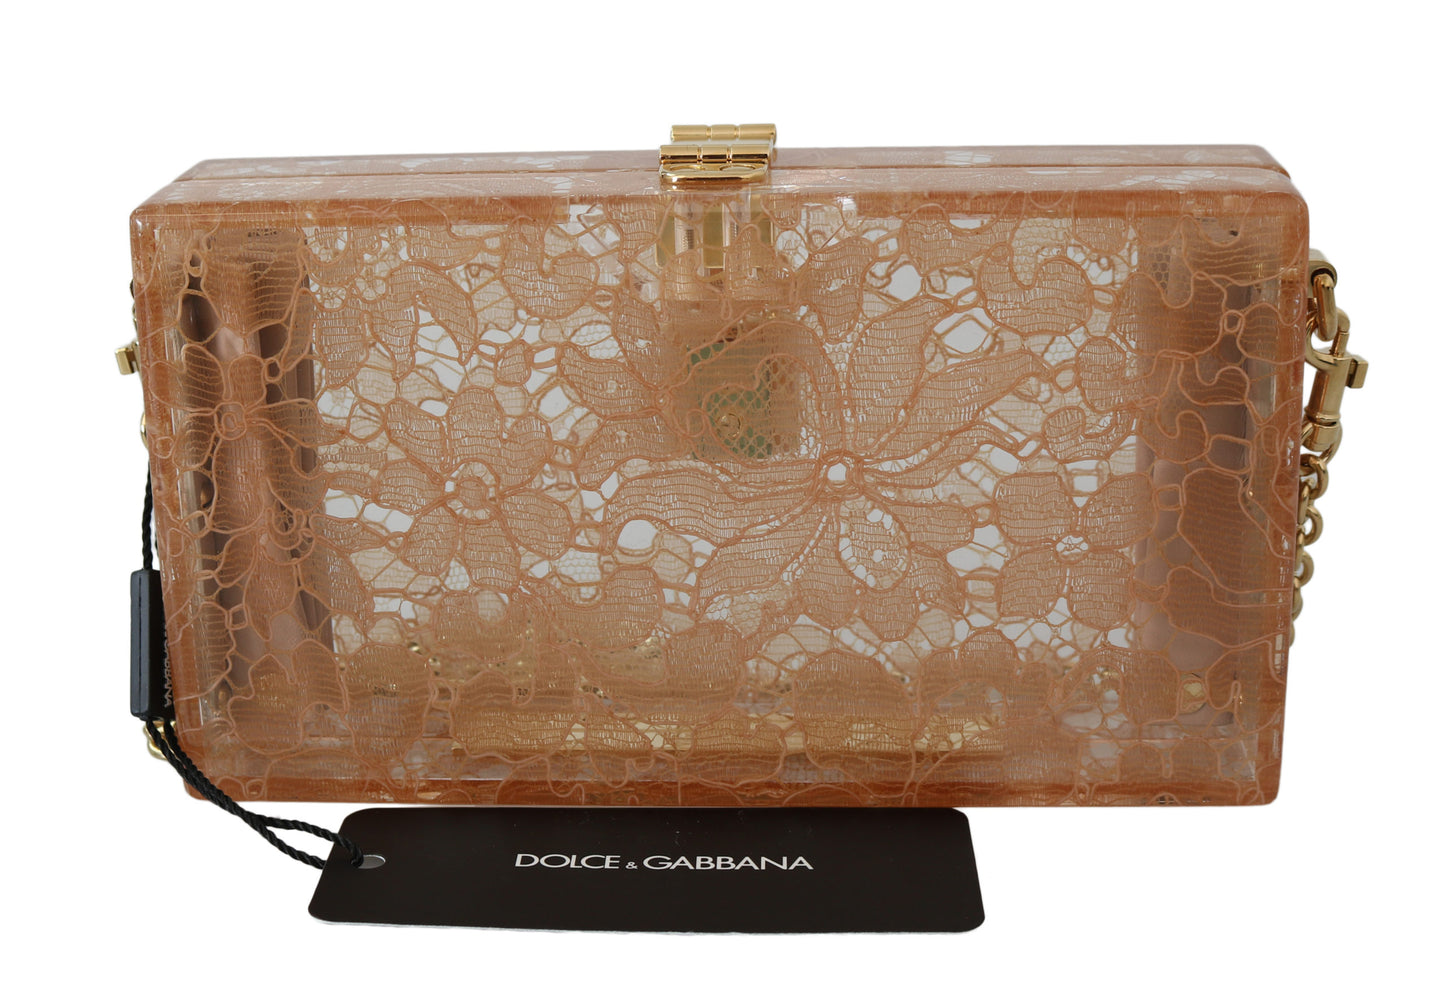 DOLCE & GABBANA Beige Plexiglass Taormina Lace Clutch Borse Bag BOX